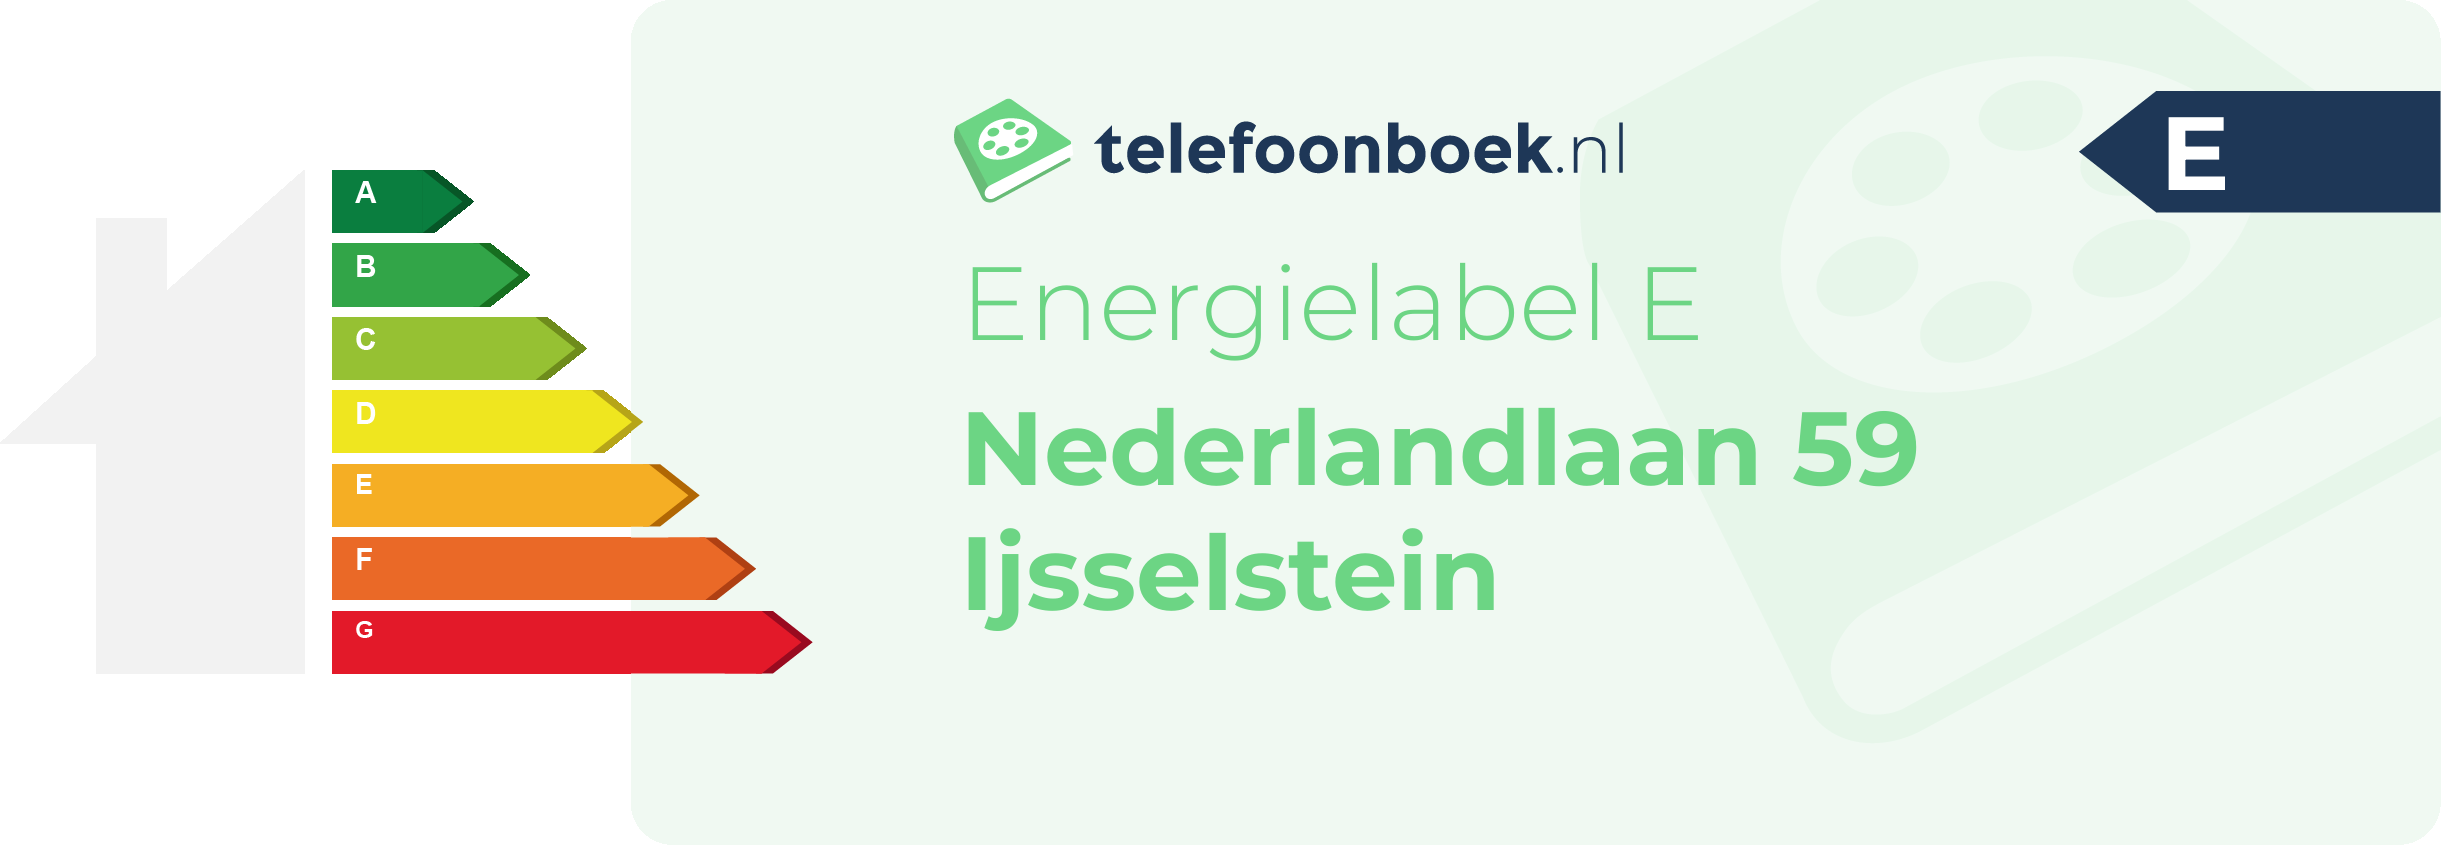 Energielabel Nederlandlaan 59 Ijsselstein